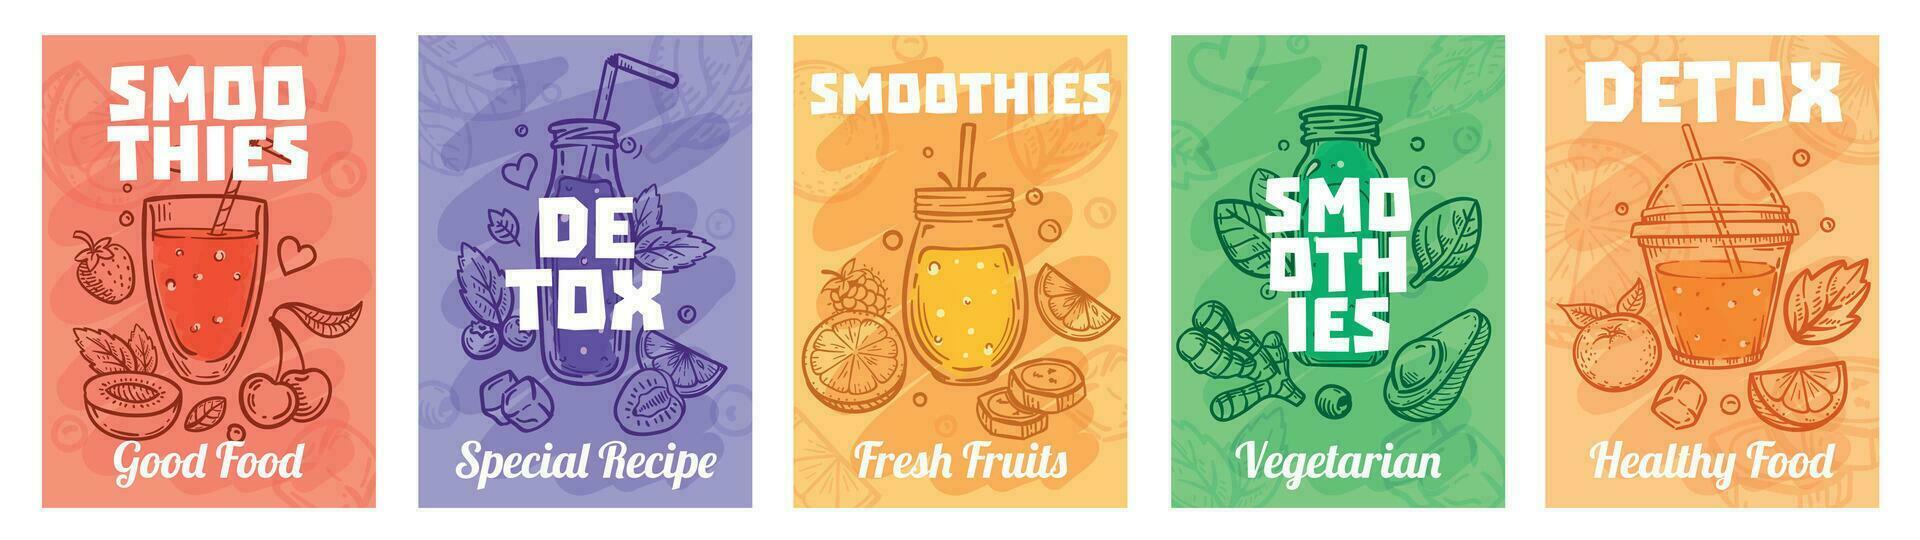 detox smoothie affisch. Bra mat smoothies, juicer för friska livsstil och färgrik färsk juicer vektor illustration uppsättning